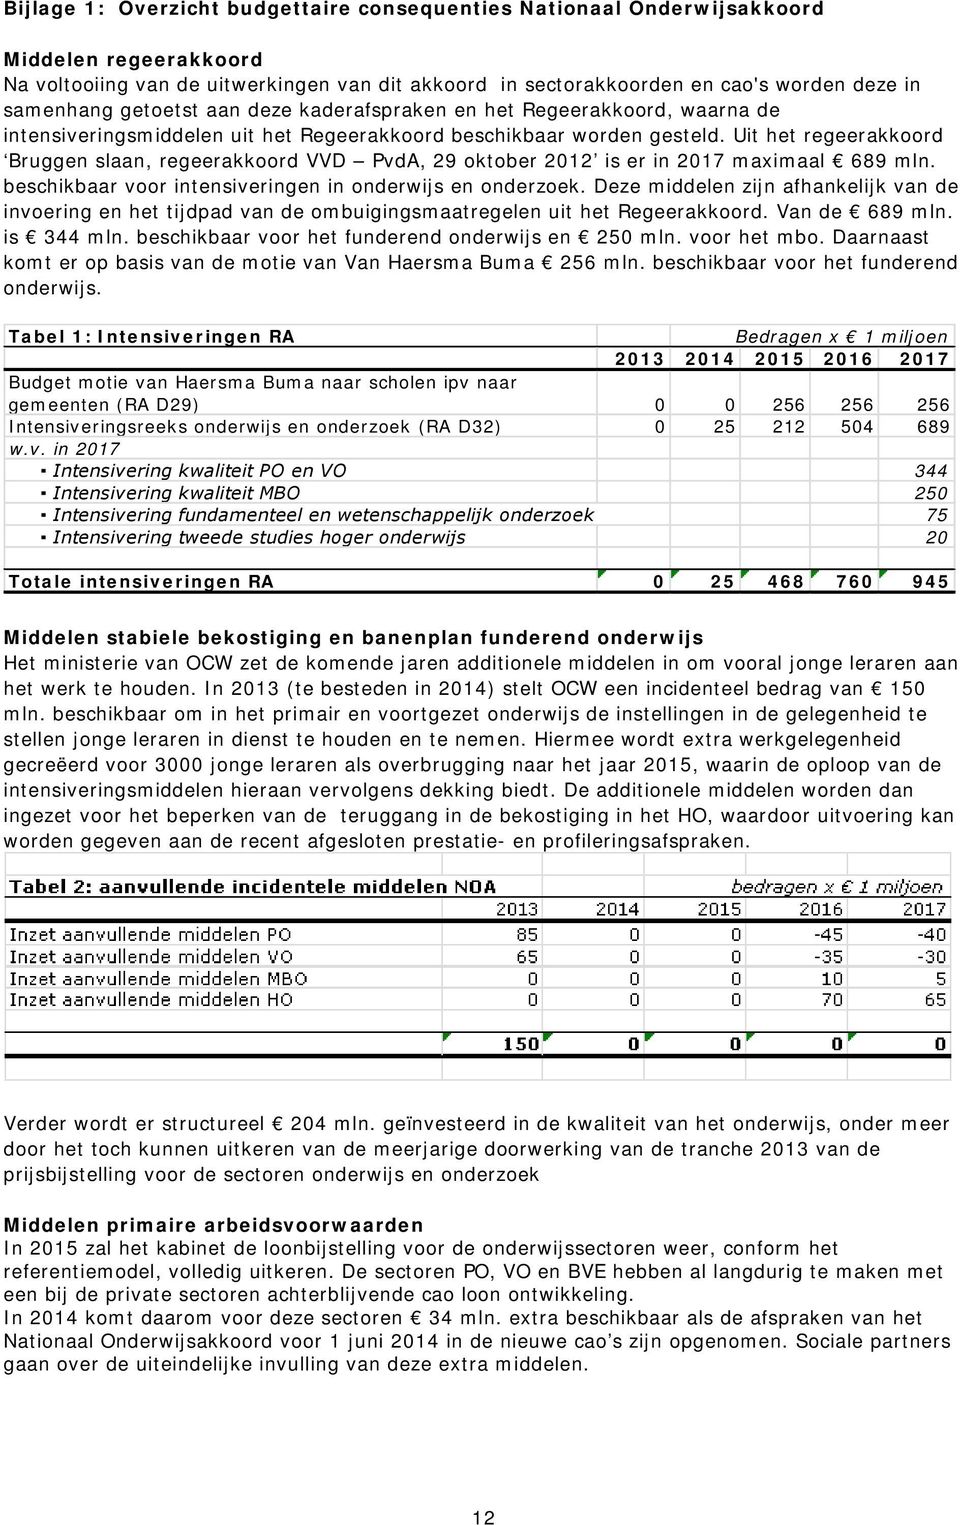 Uit het regeerakkoord Bruggen slaan, regeerakkoord VVD PvdA, 29 oktober 2012 is er in 2017 maximaal 689 mln. beschikbaar voor intensiveringen in onderwijs en onderzoek.